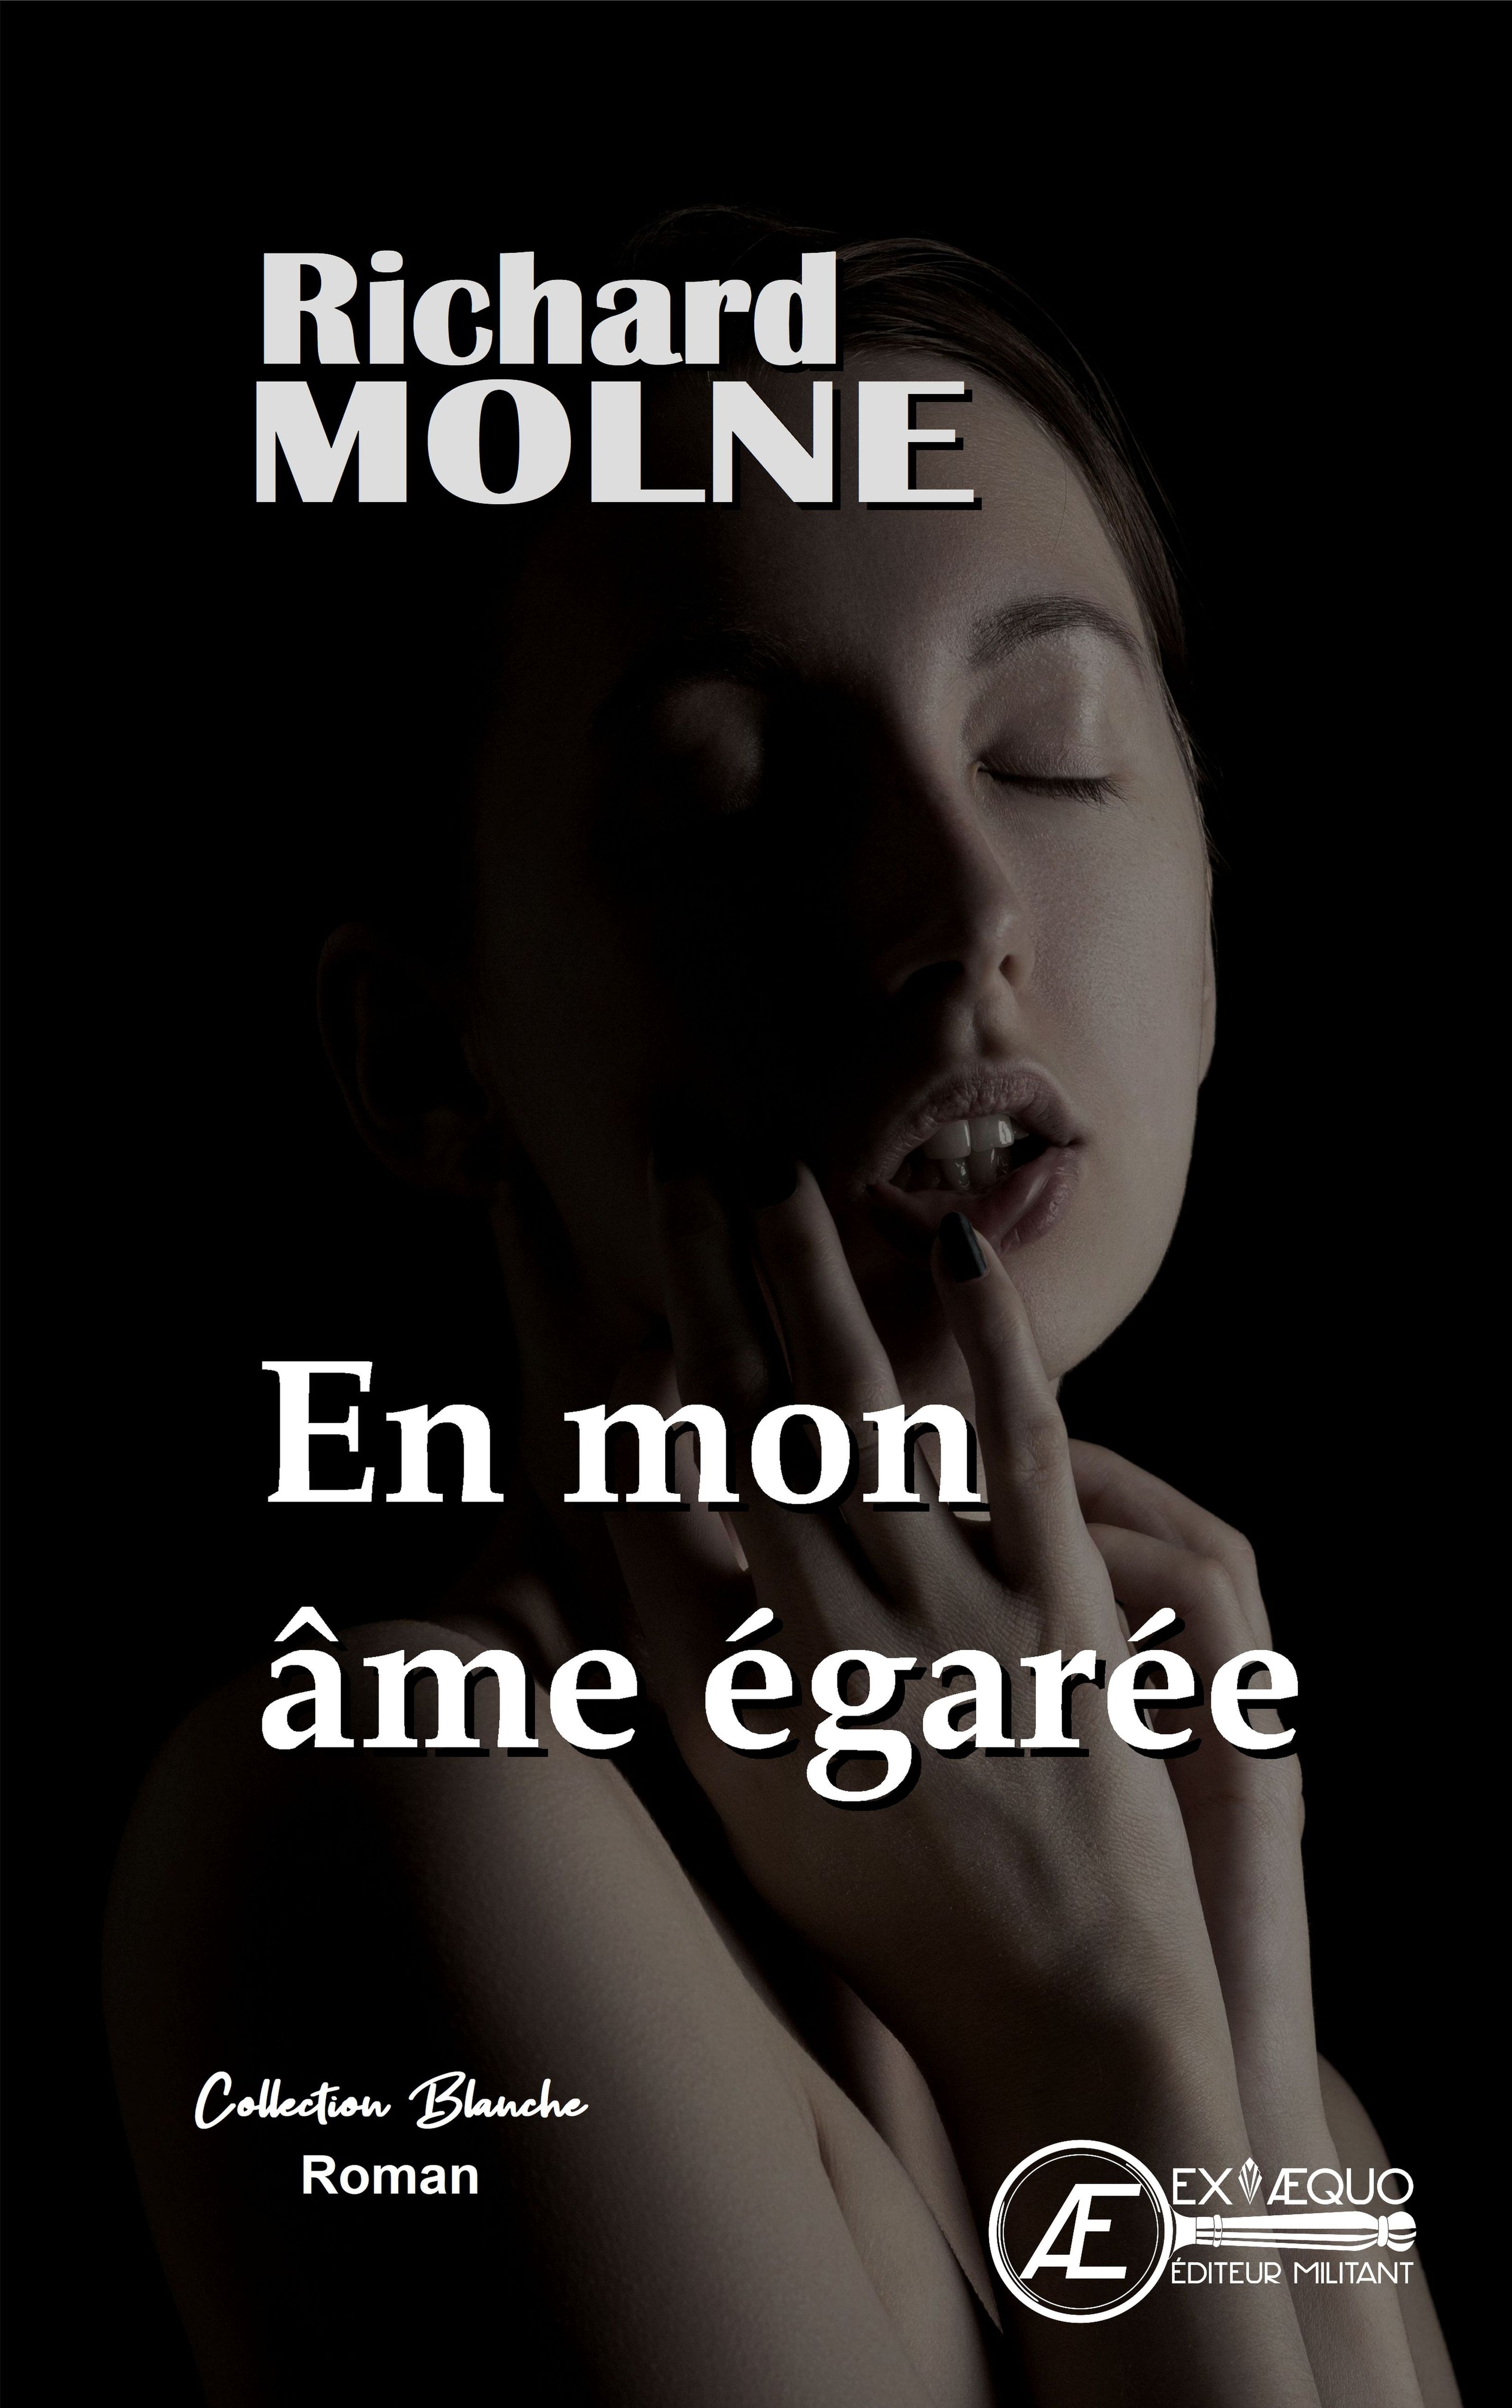 You are currently viewing En mon âme égarée, de Richard Molne